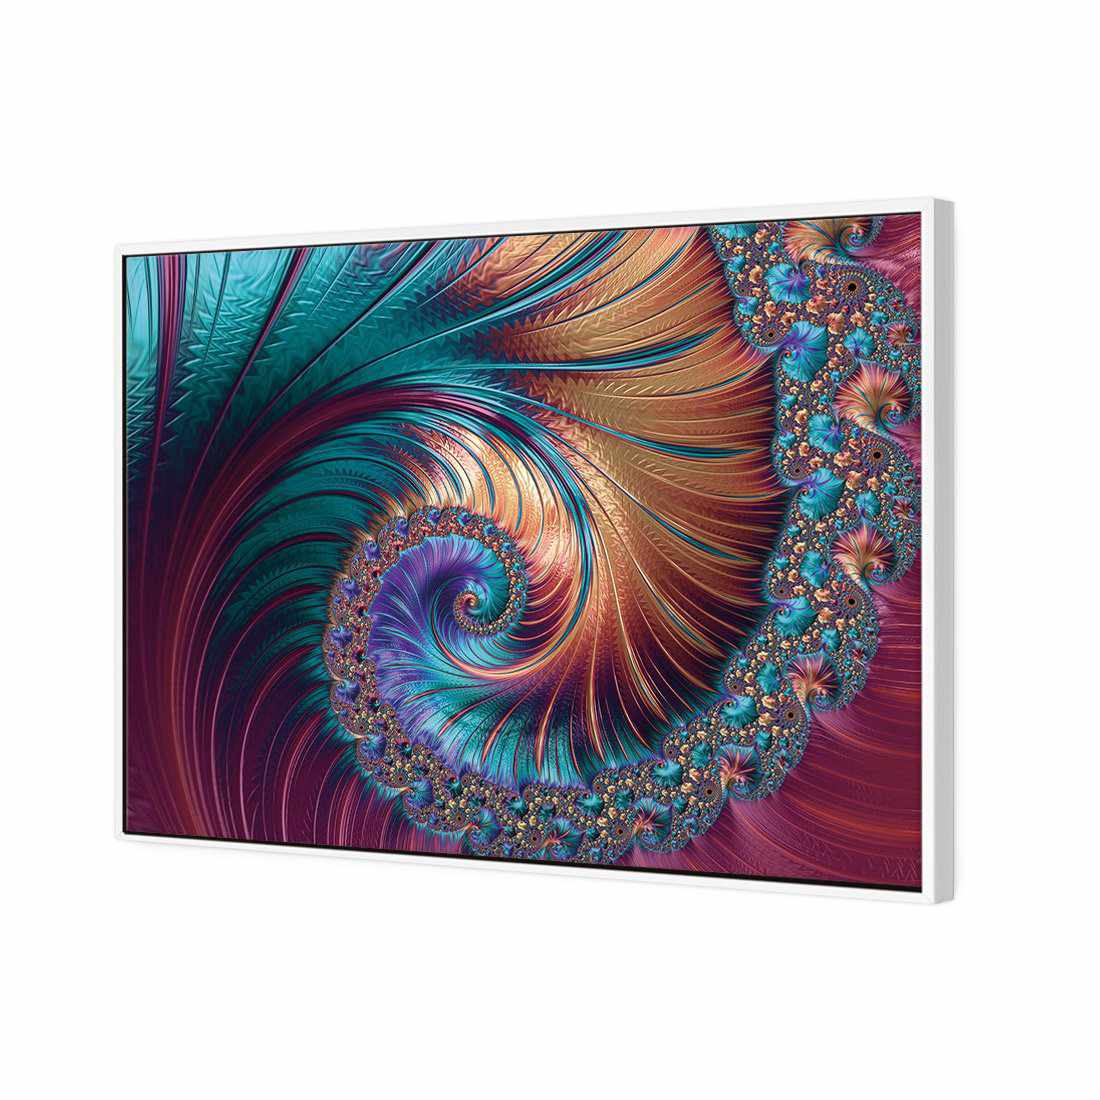 Luxe Spiral Canvas Art-Canvas-Wall Art Designs-45x30cm-Canvas - White Frame-Wall Art Designs